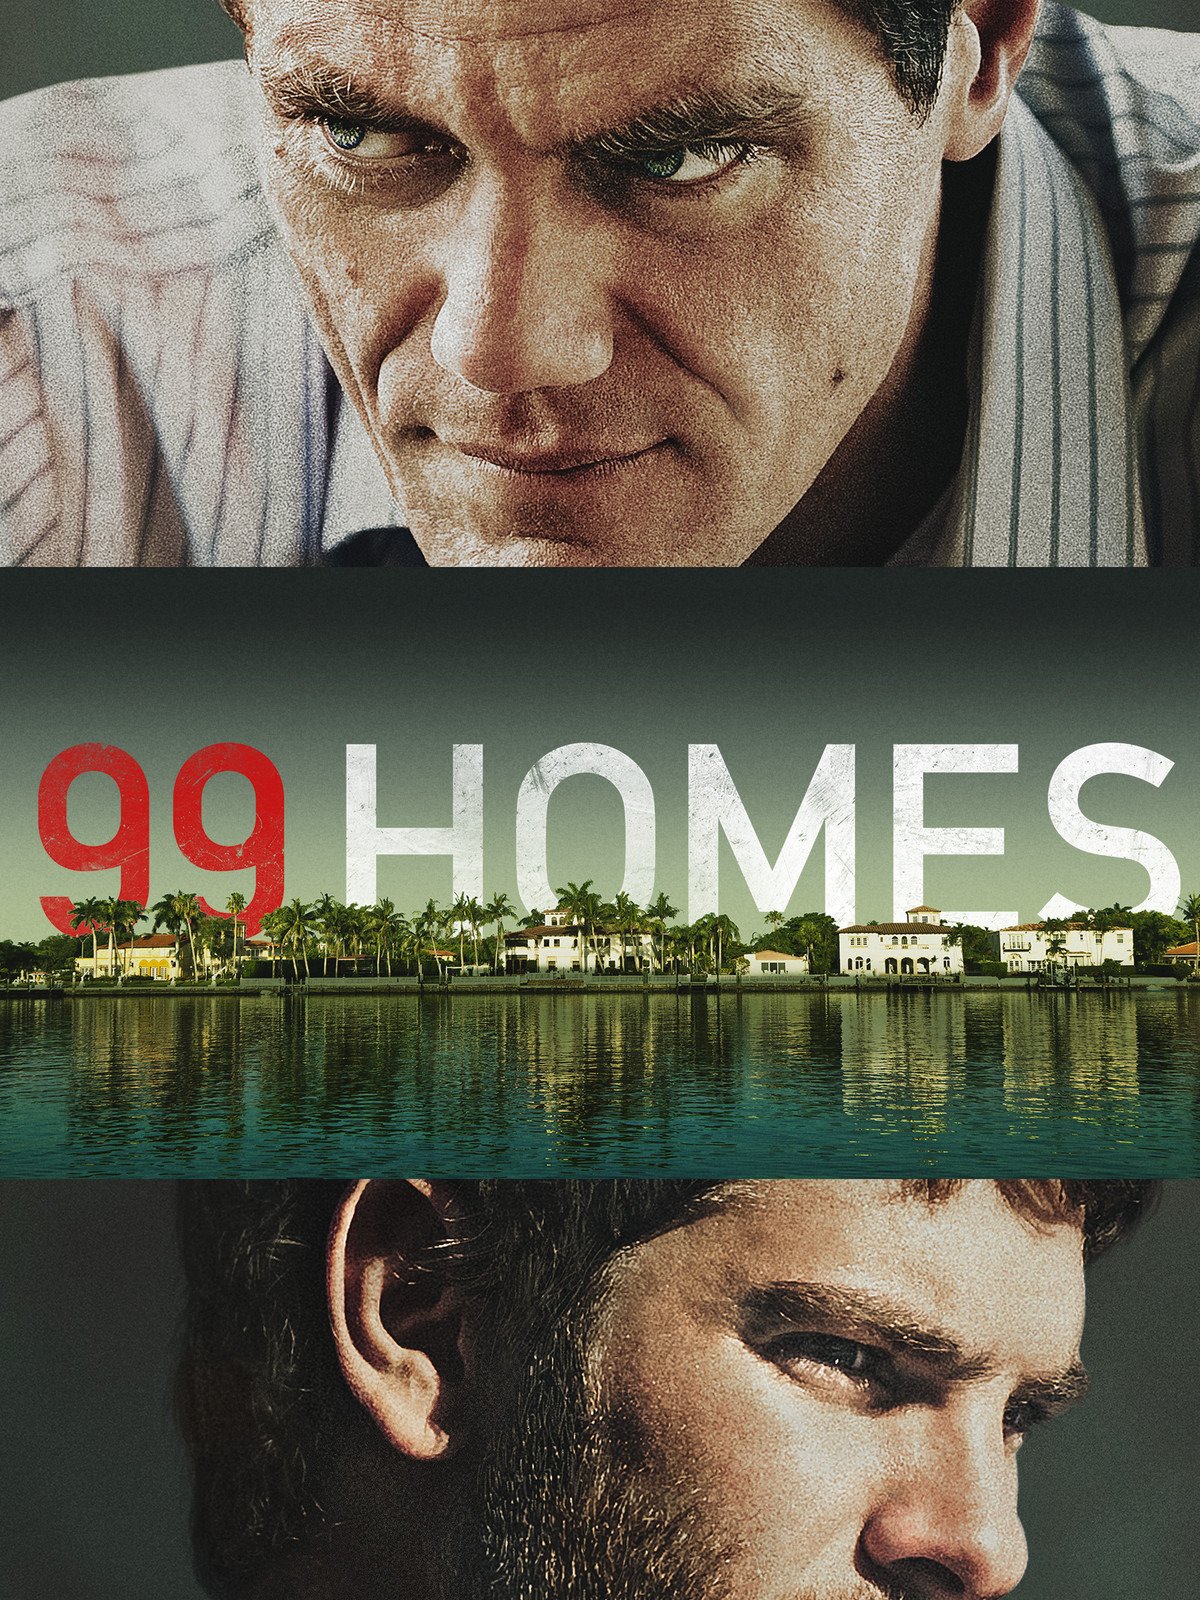 99 Homes (2015, Dir. J. C. Ramin Bahrani)